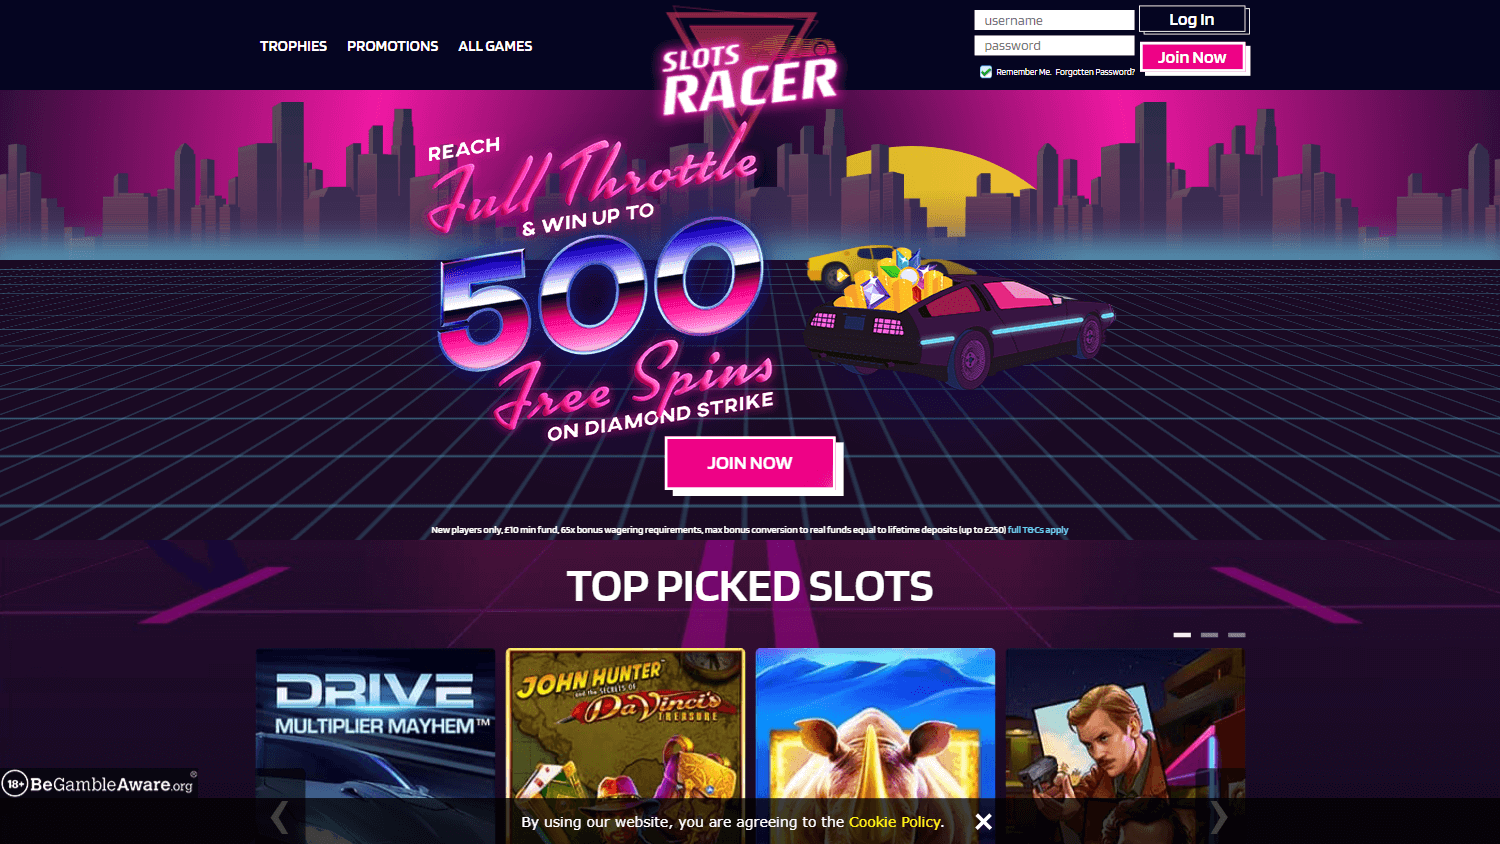 slots_racer_casino_homepage_desktop